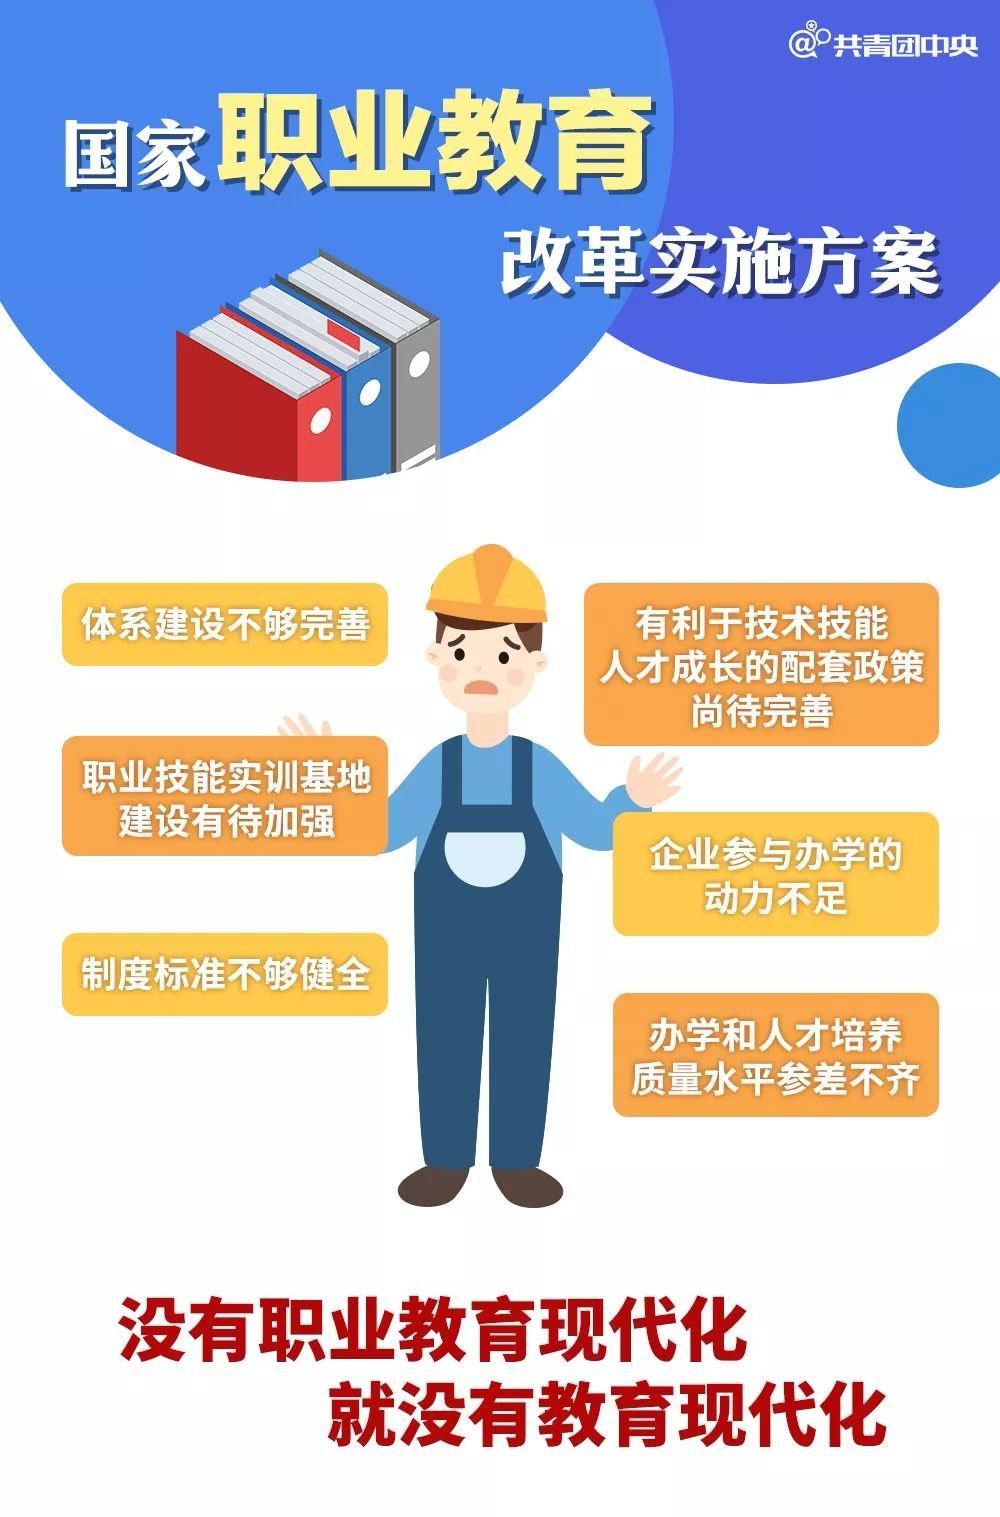 中华黎民共和邦职业培养法(图1)